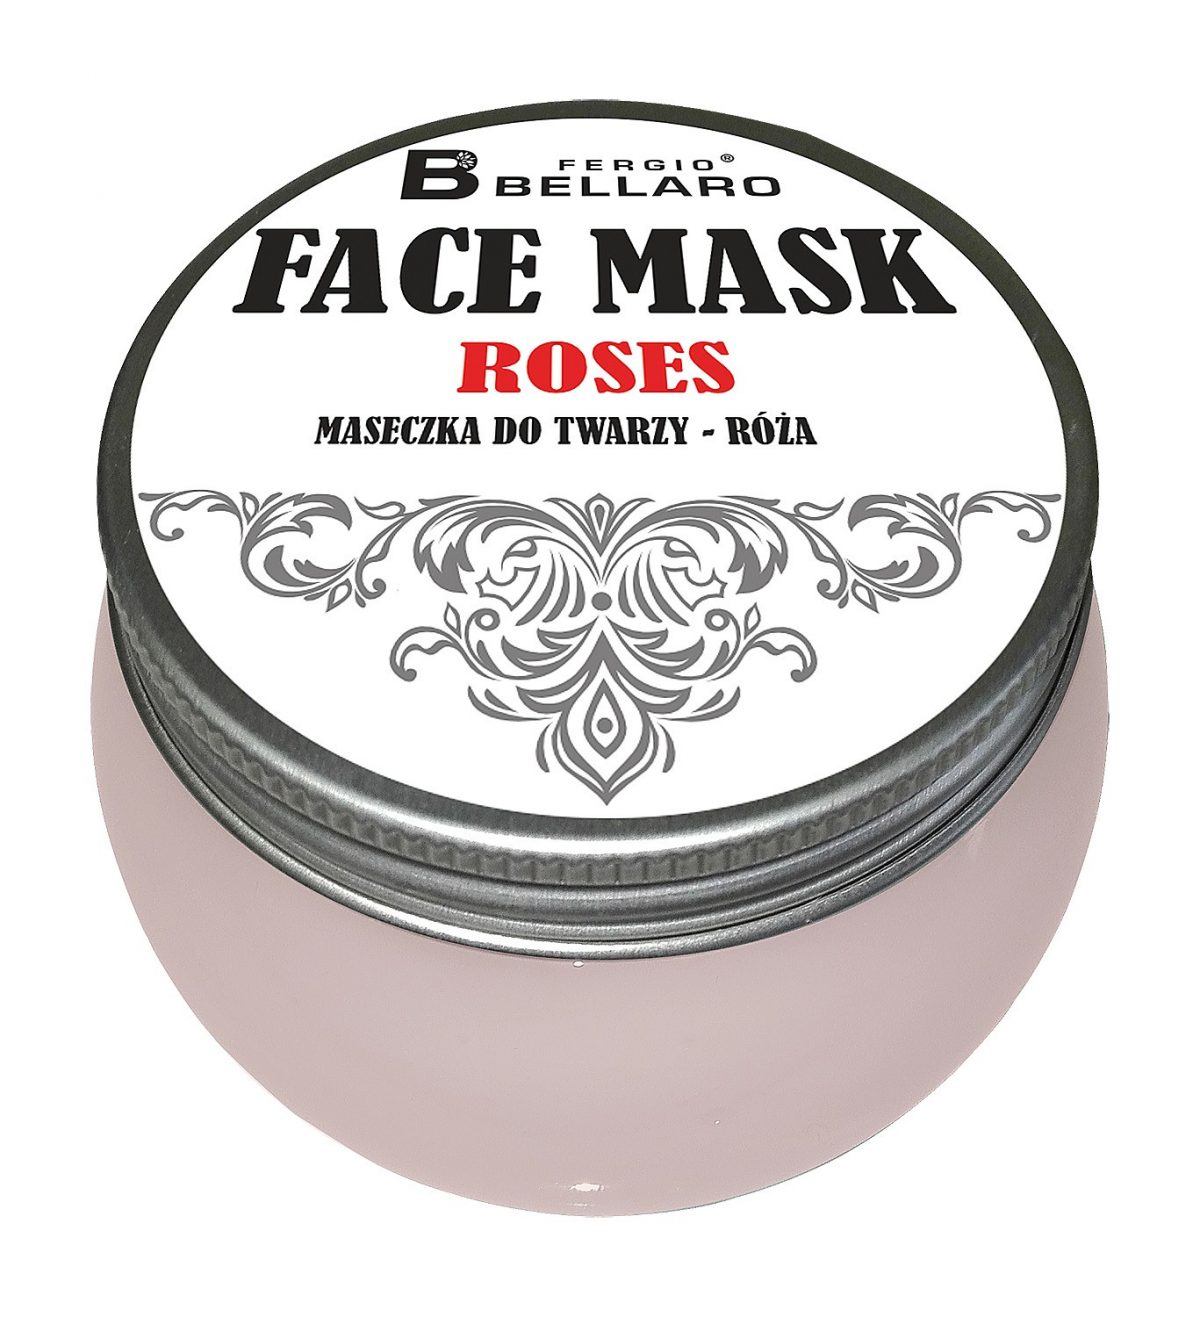 Maska za hidrataciju kože lica FERGIO BELLARO 200 ml